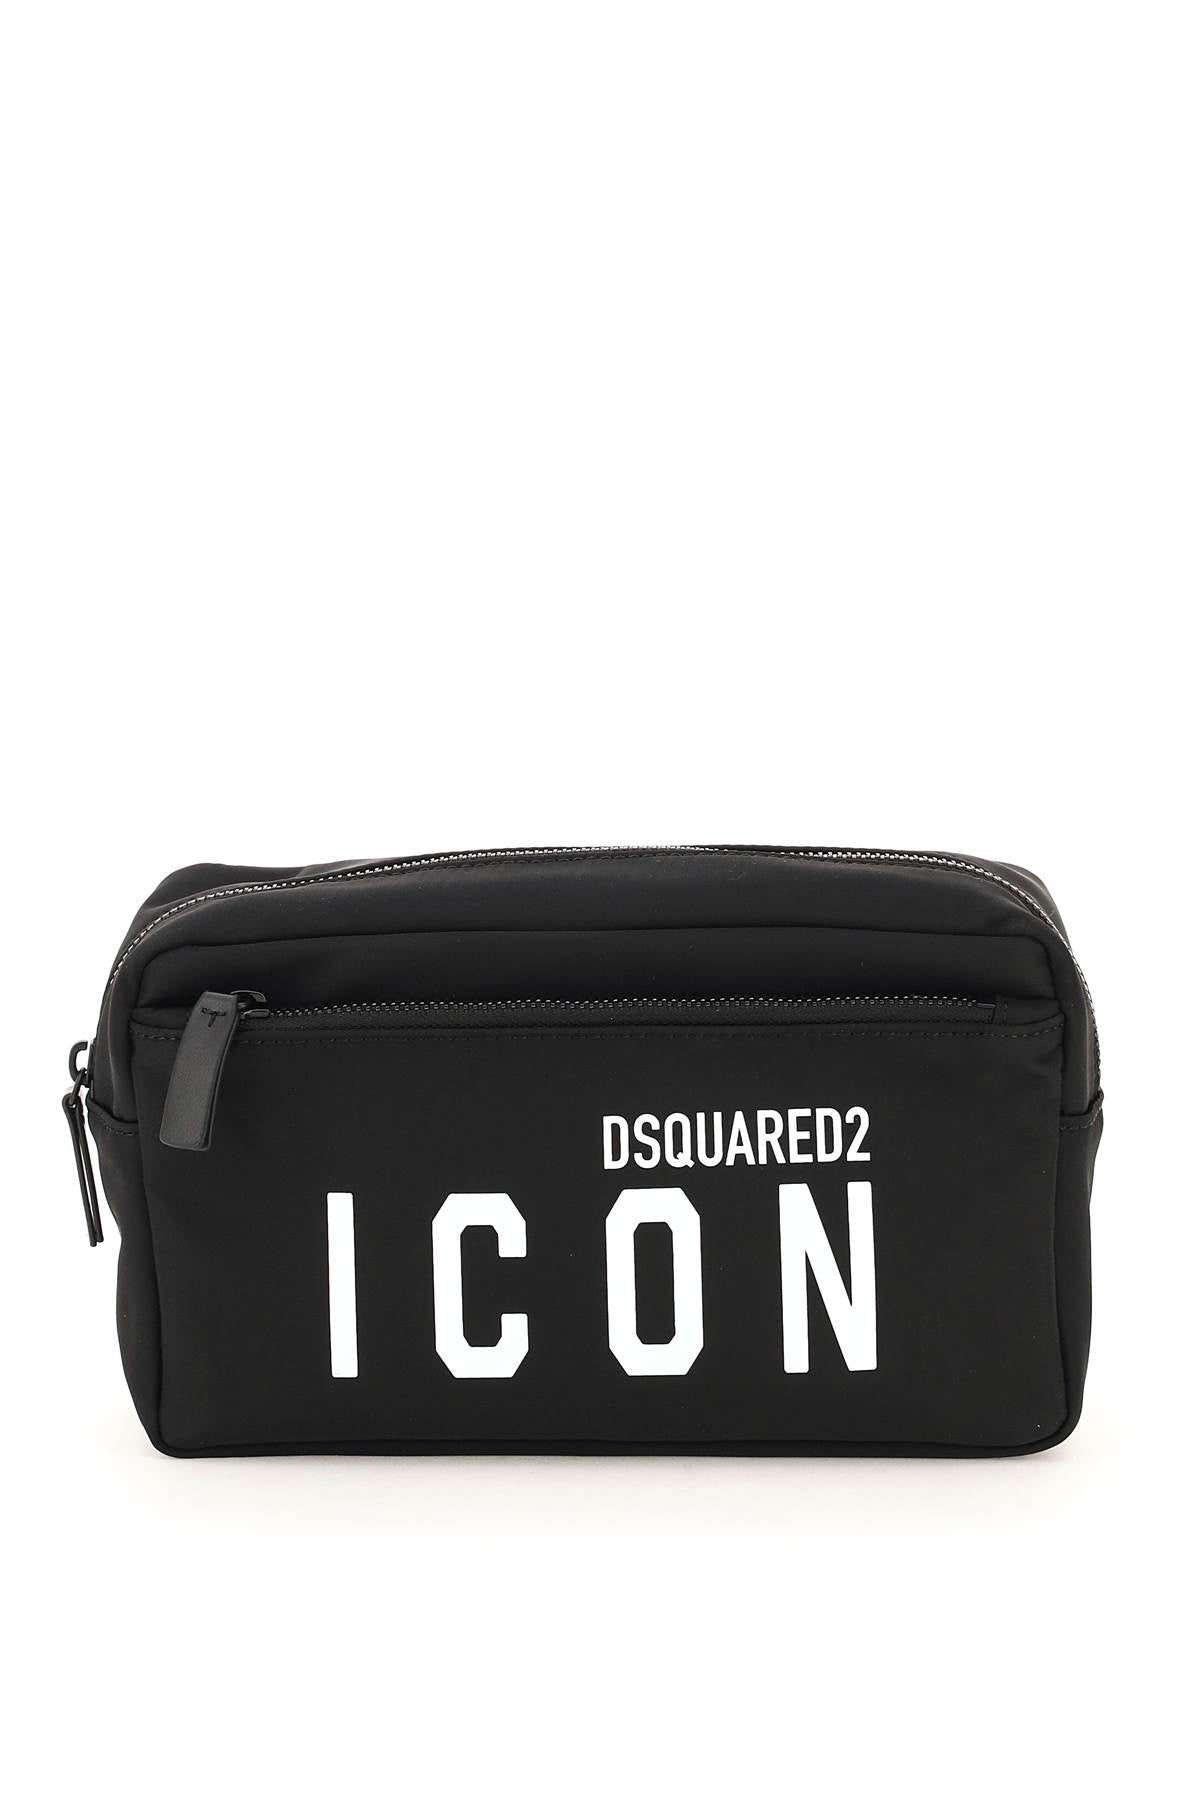 Dsquared2 nylon icon vanity case-0